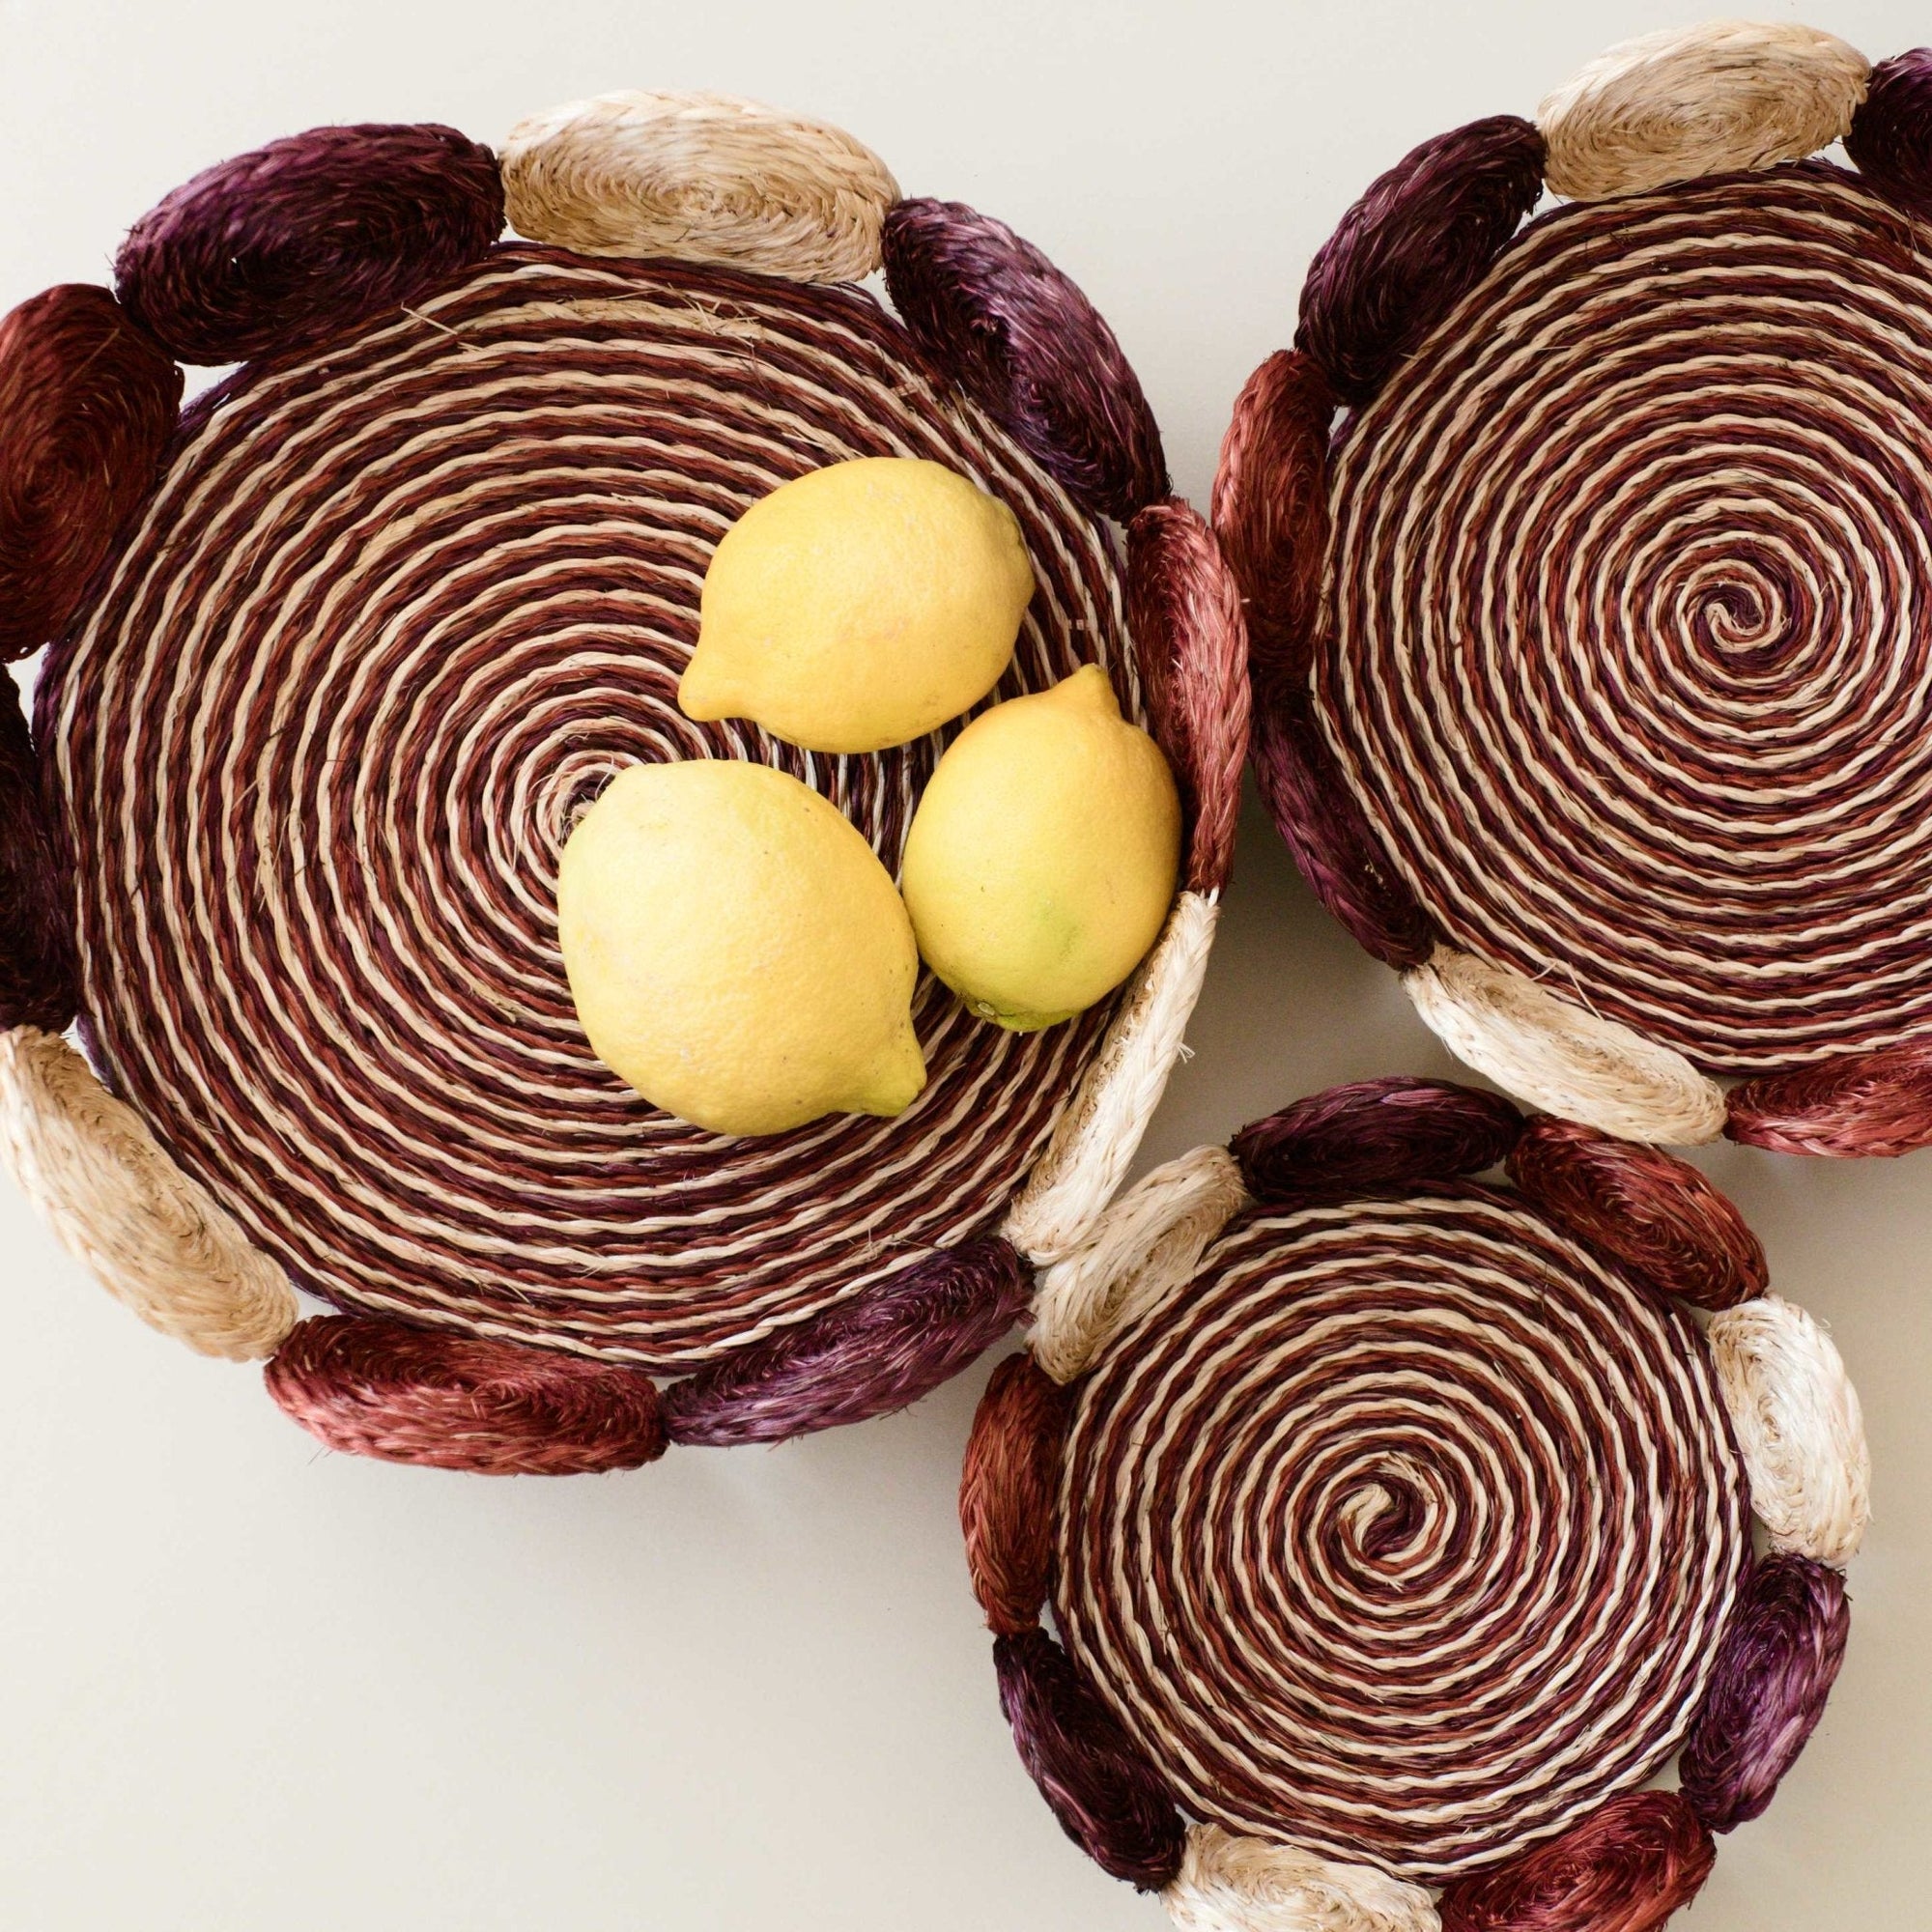 Natural Woven Fruit Basket - Set of 3